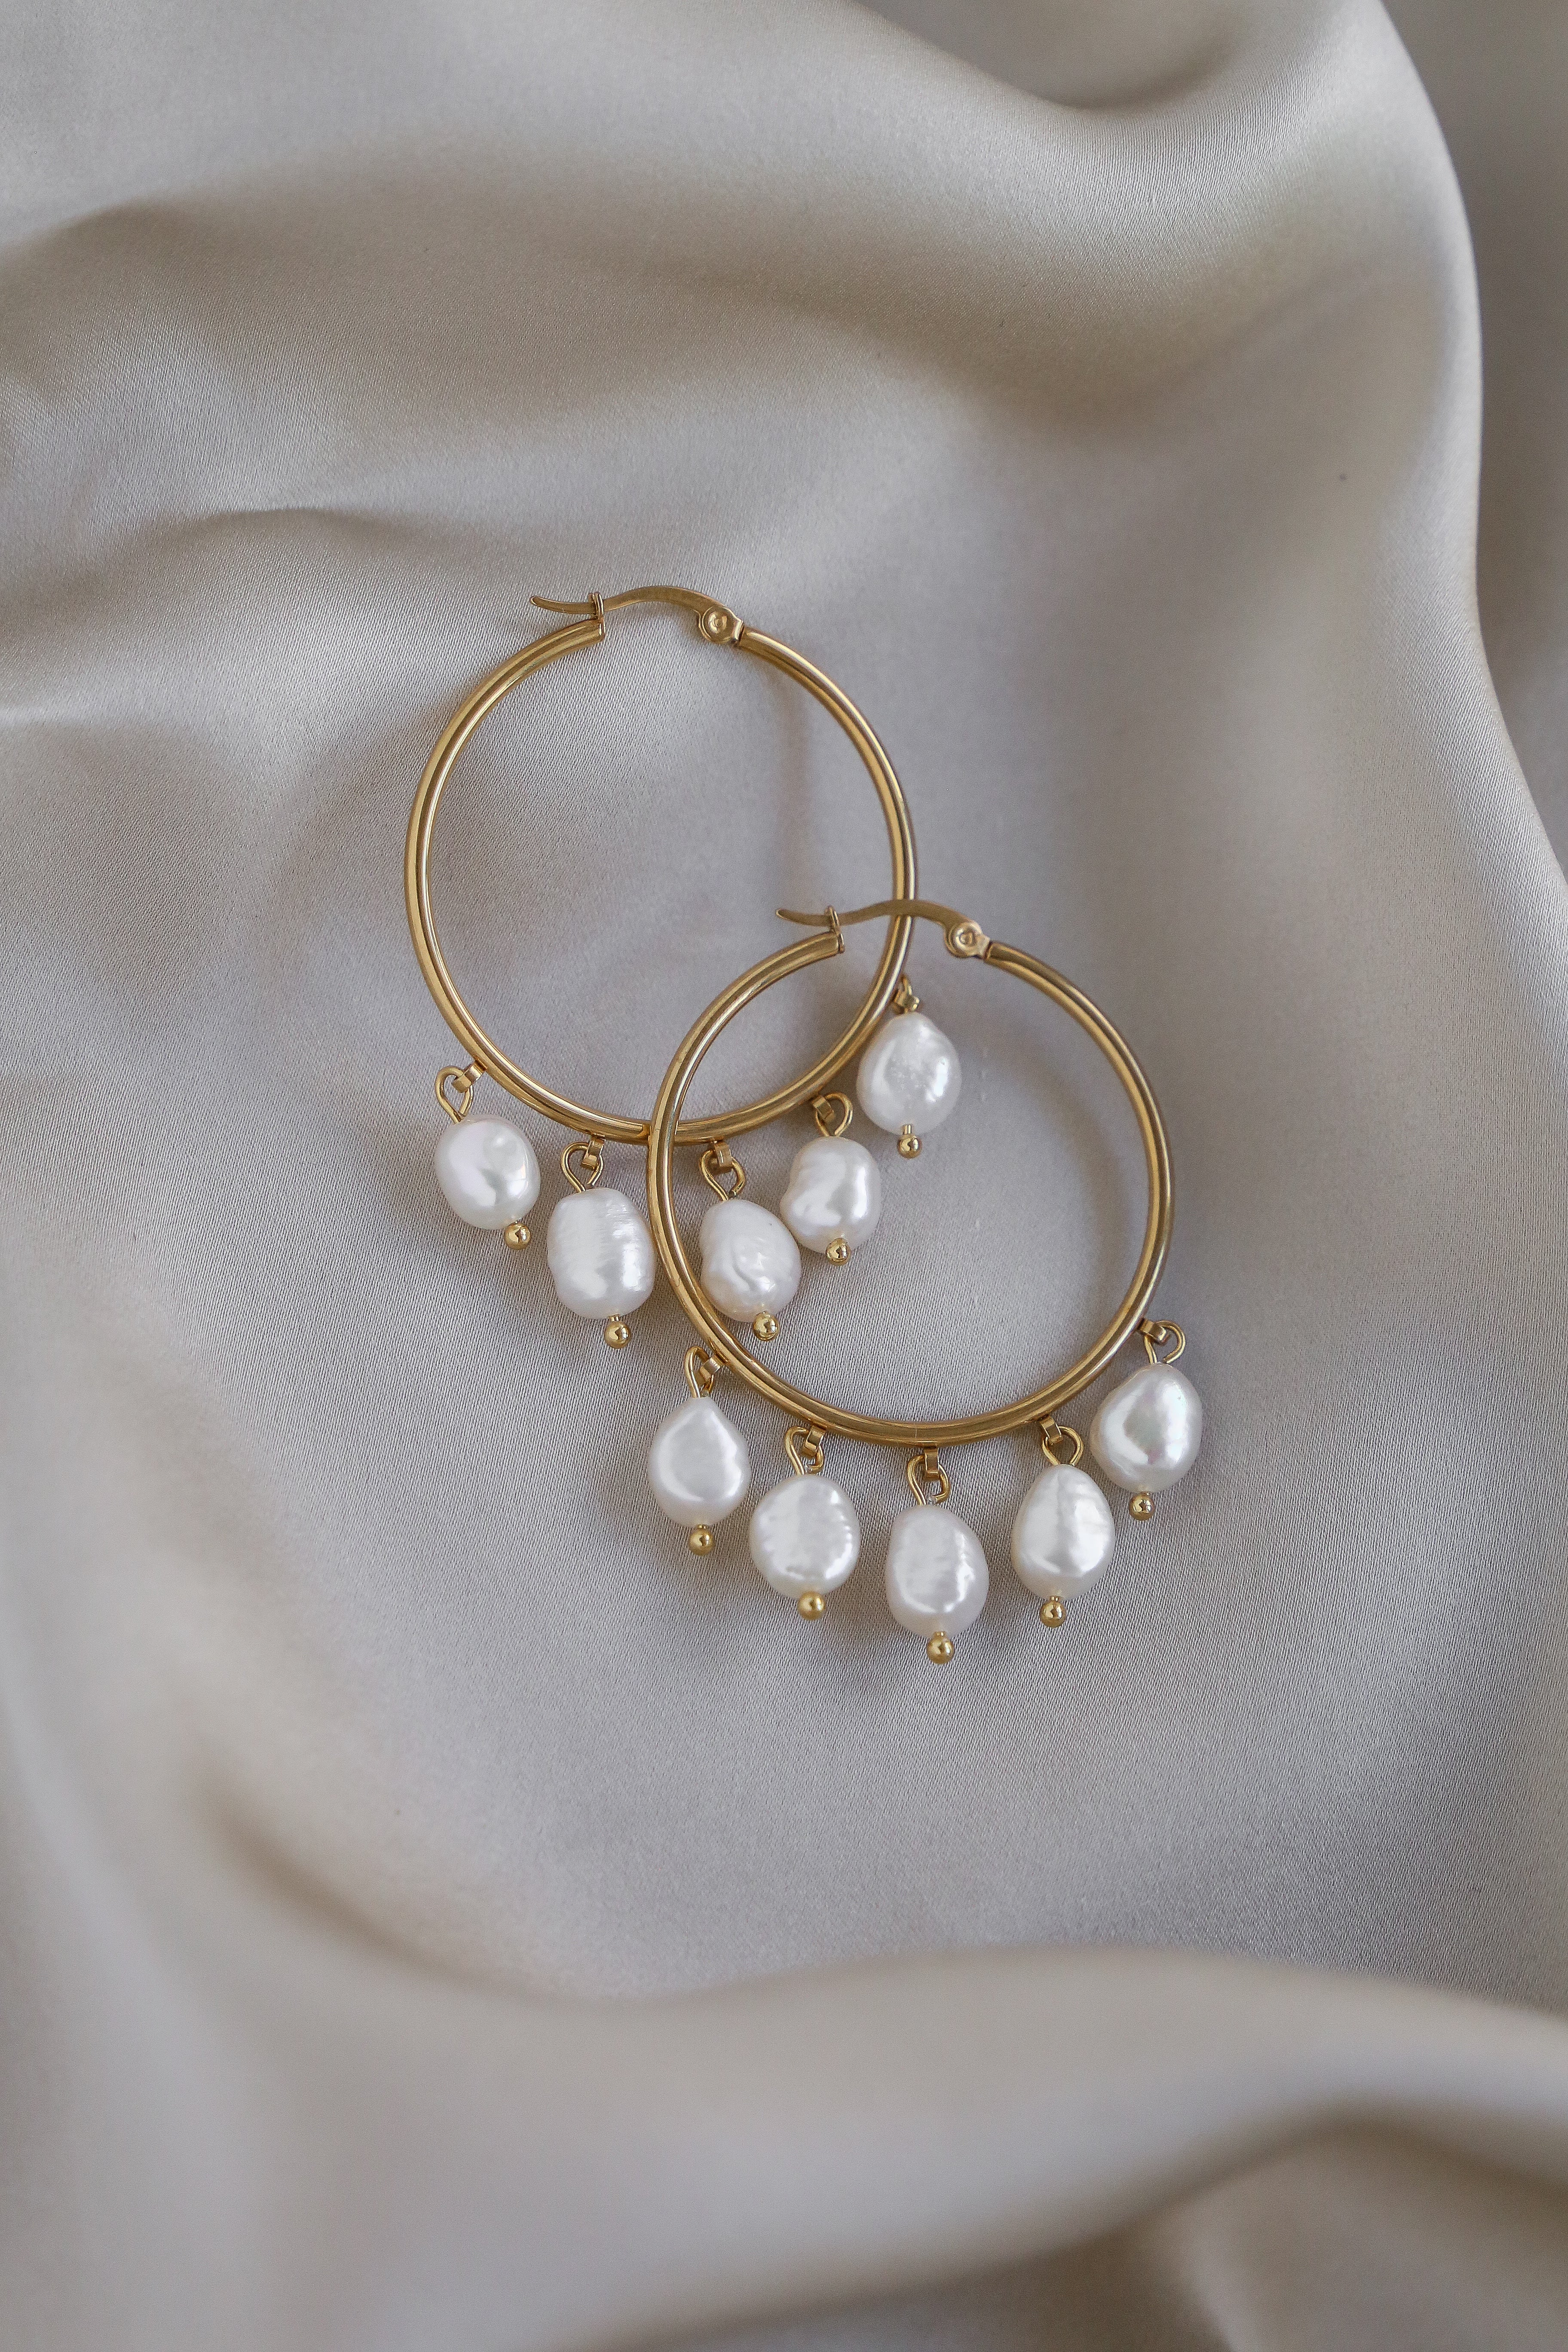 Milou Hoop Earrings - Boutique Minimaliste has waterproof, durable, elegant and vintage inspired jewelry